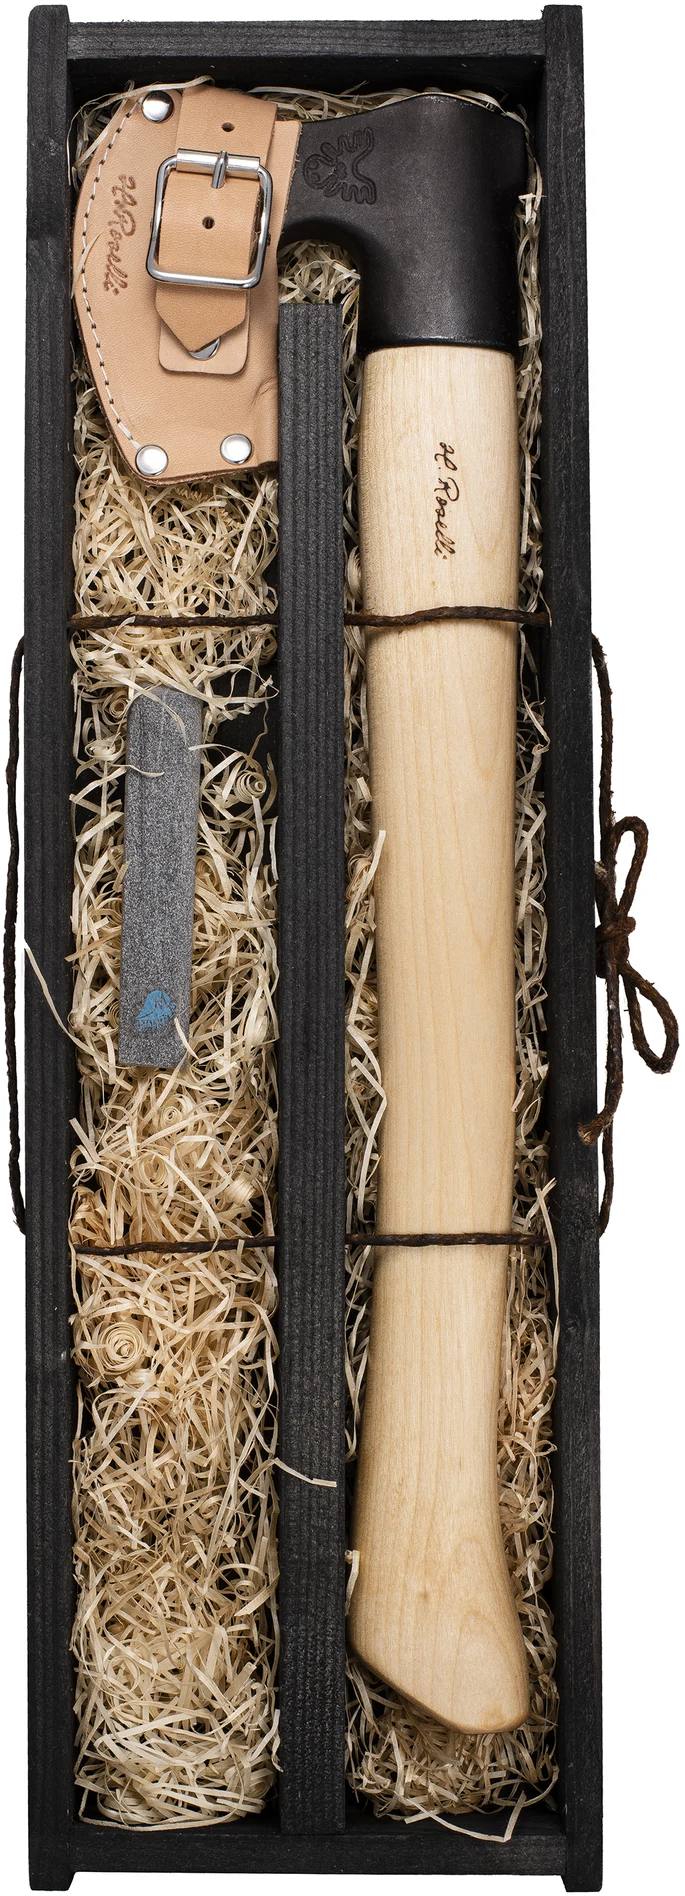 Roselli Gift box for long axe